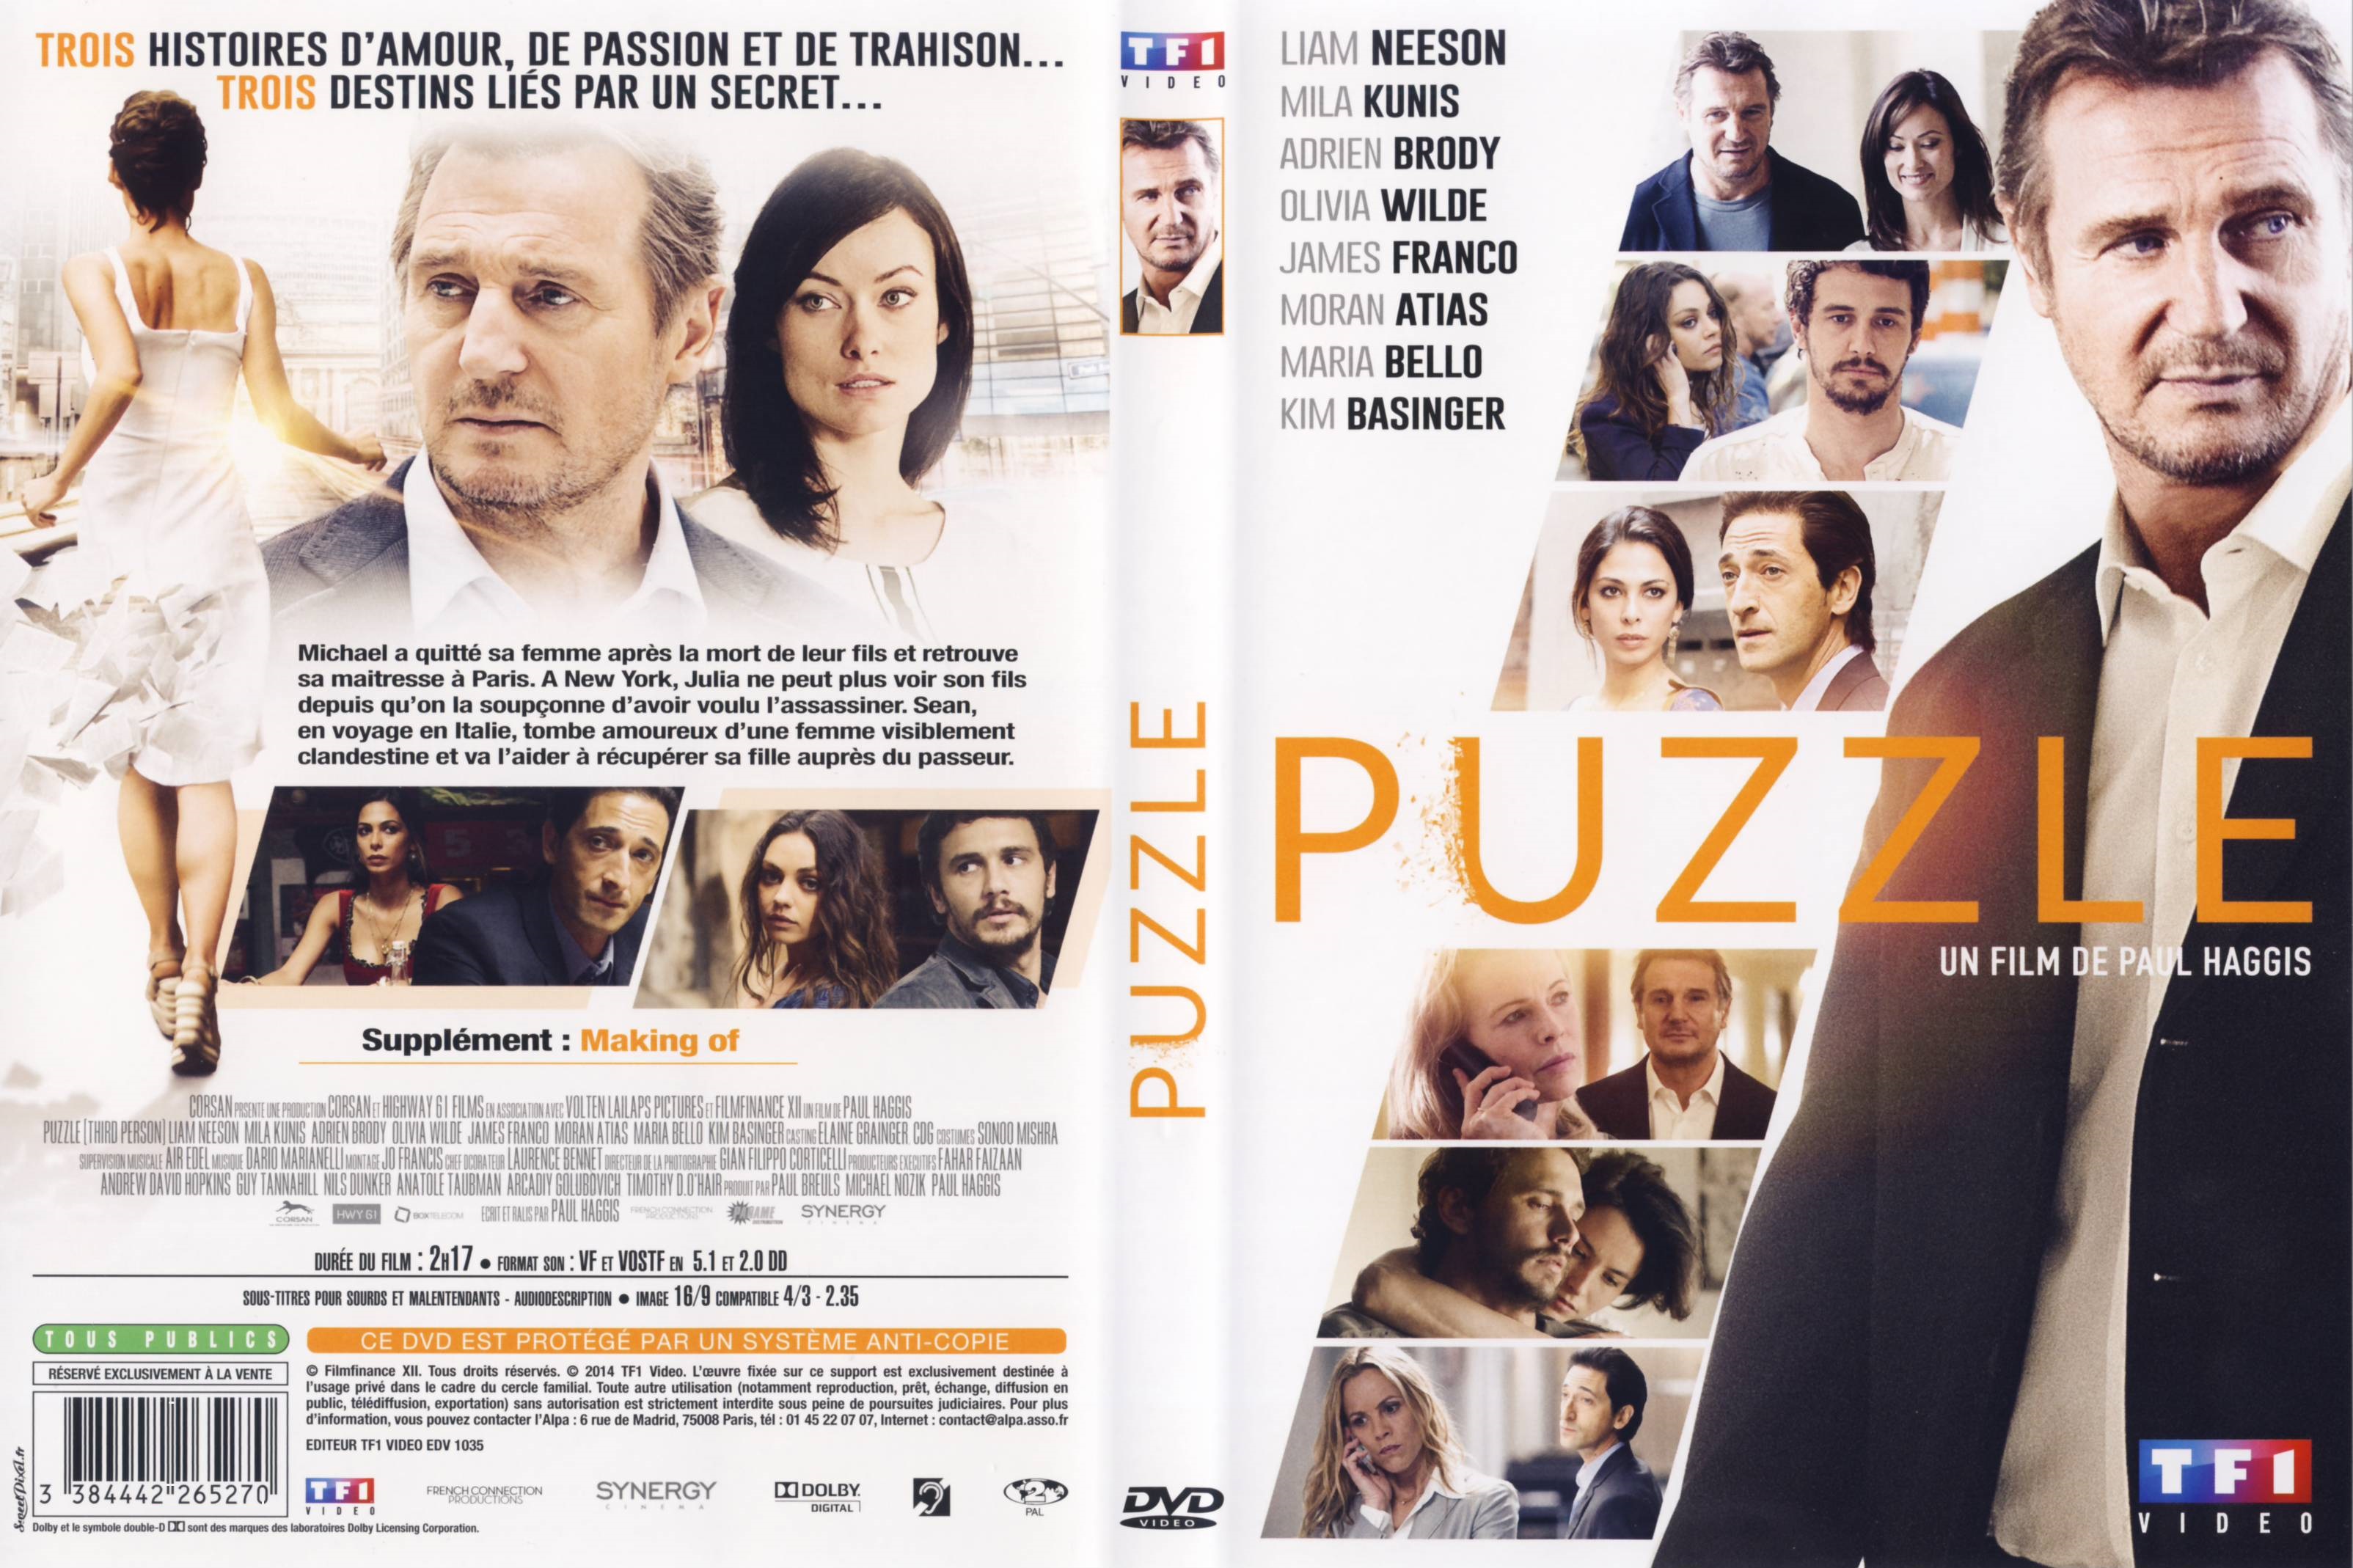 Jaquette DVD Puzzle (2014)